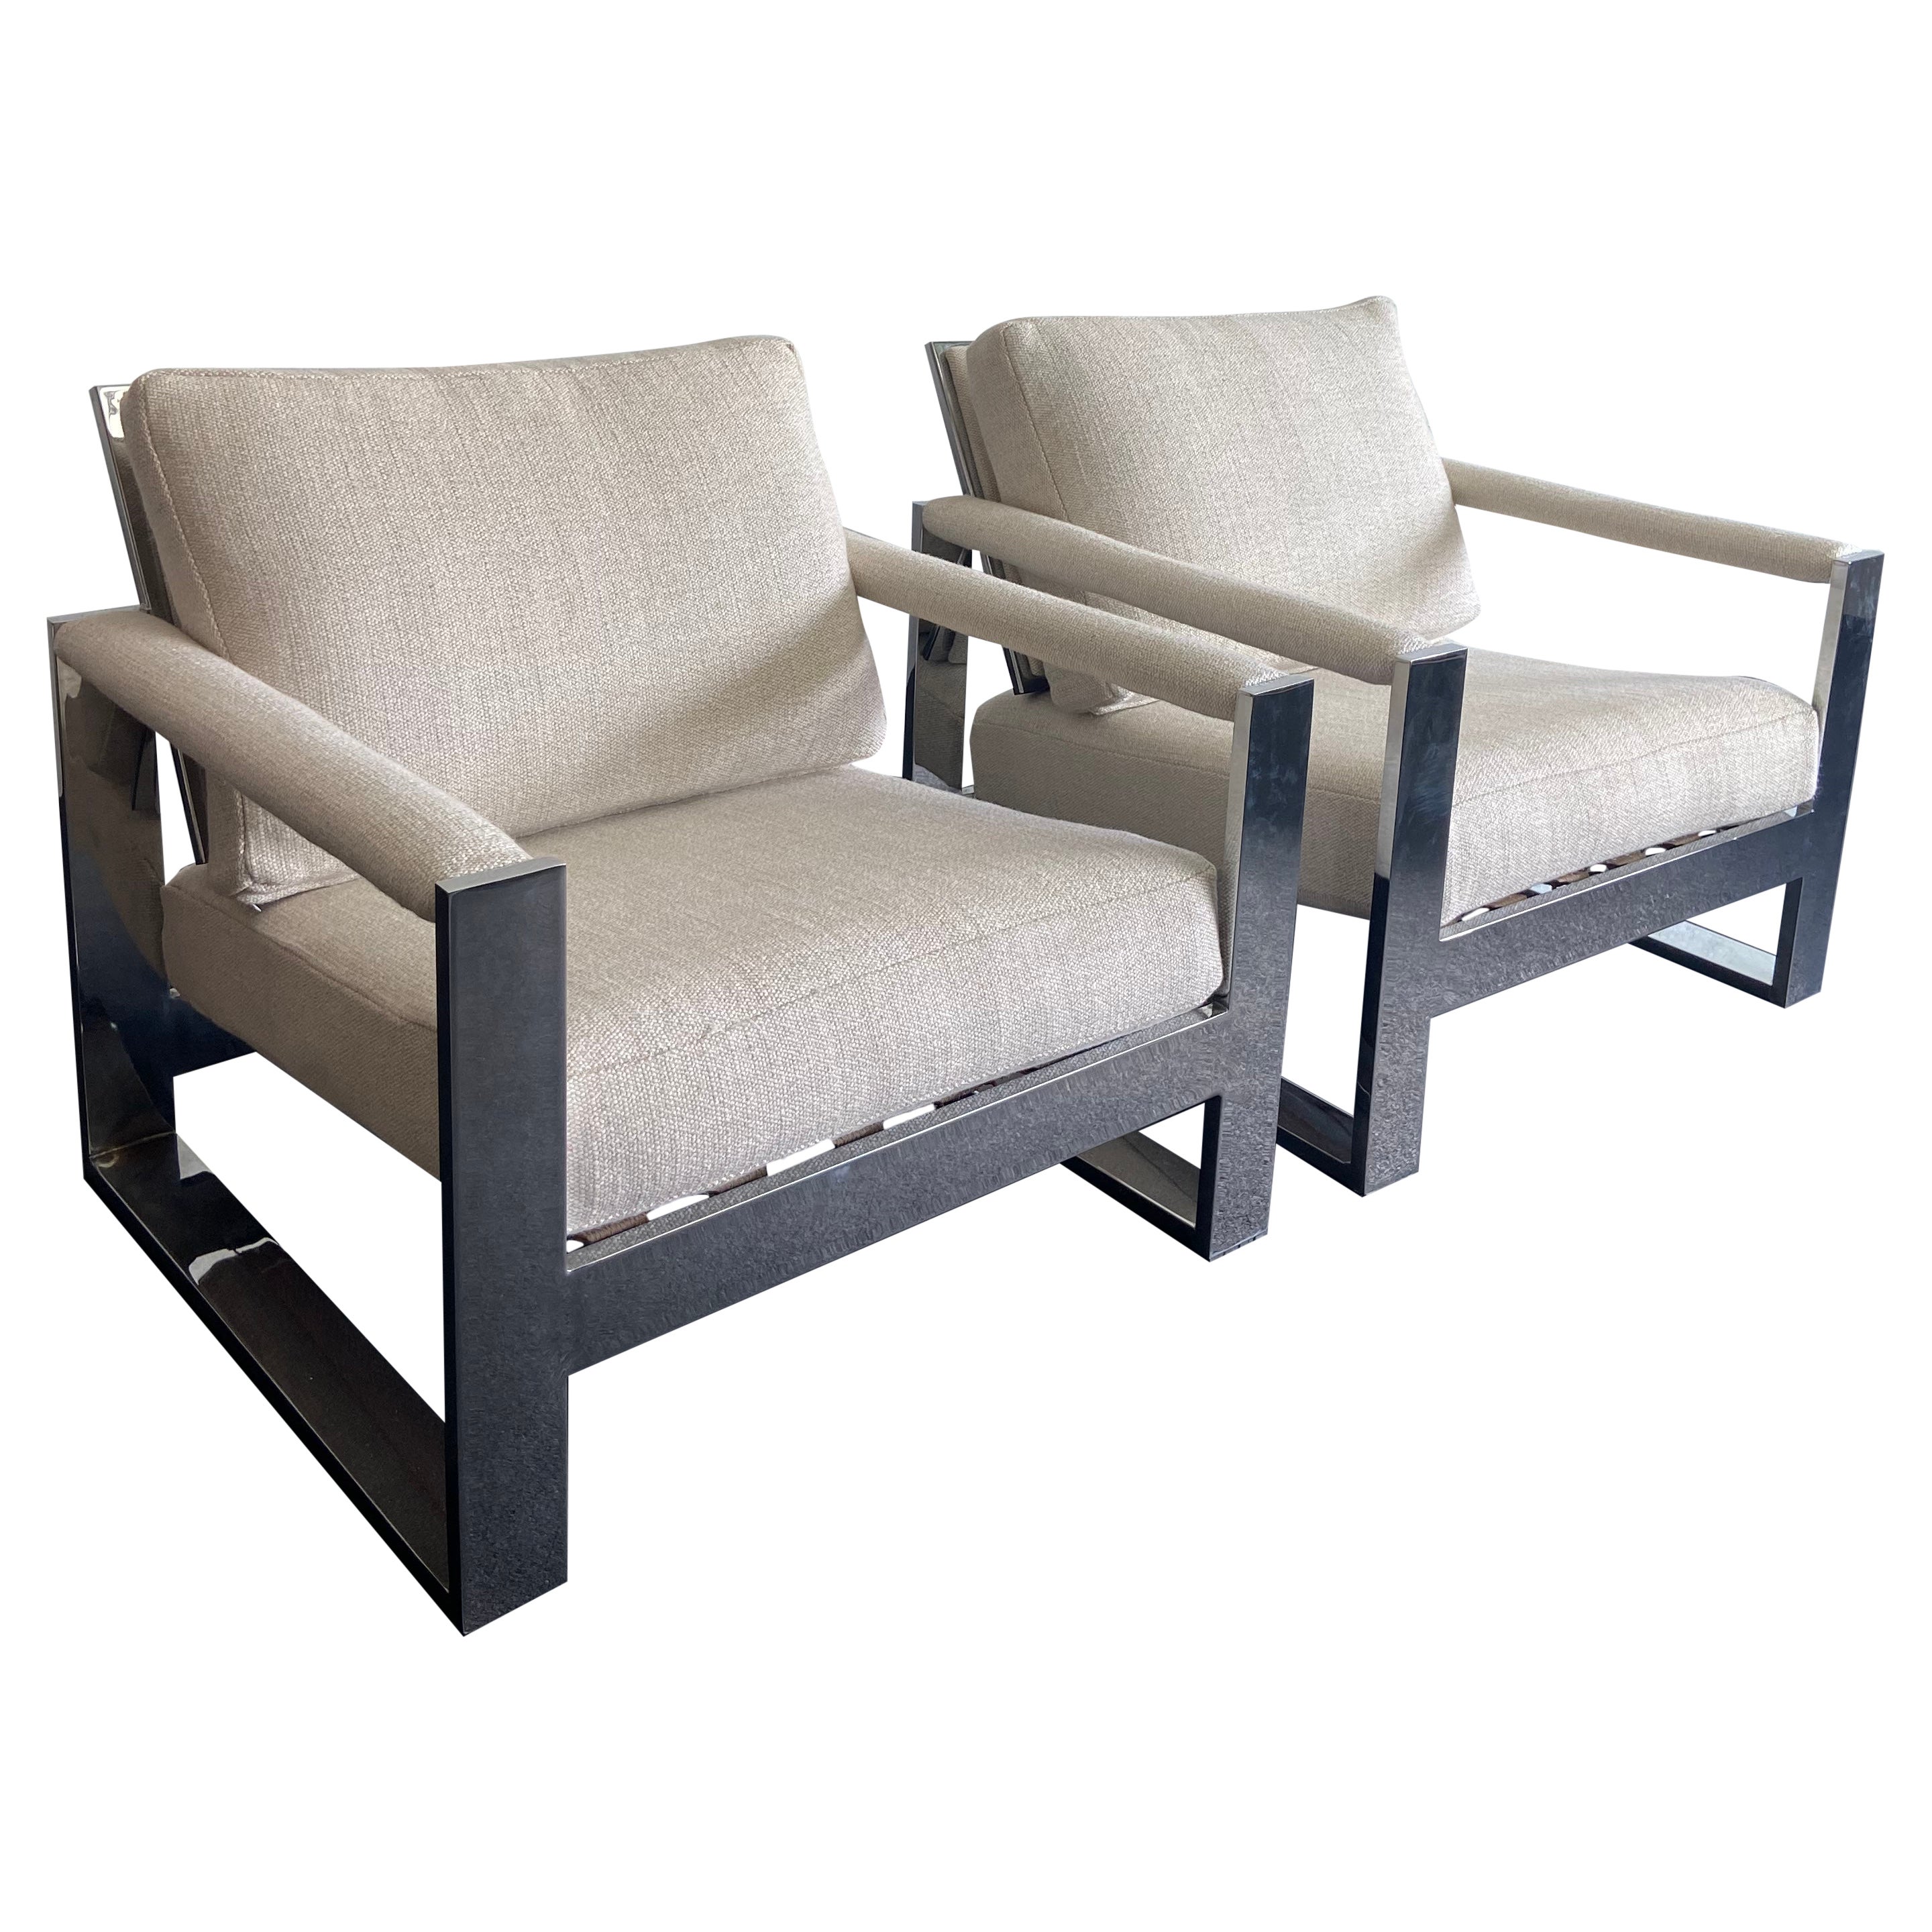 Milo Baughman for Thayer Coggin Chrome Lounge Chairs - a Pair